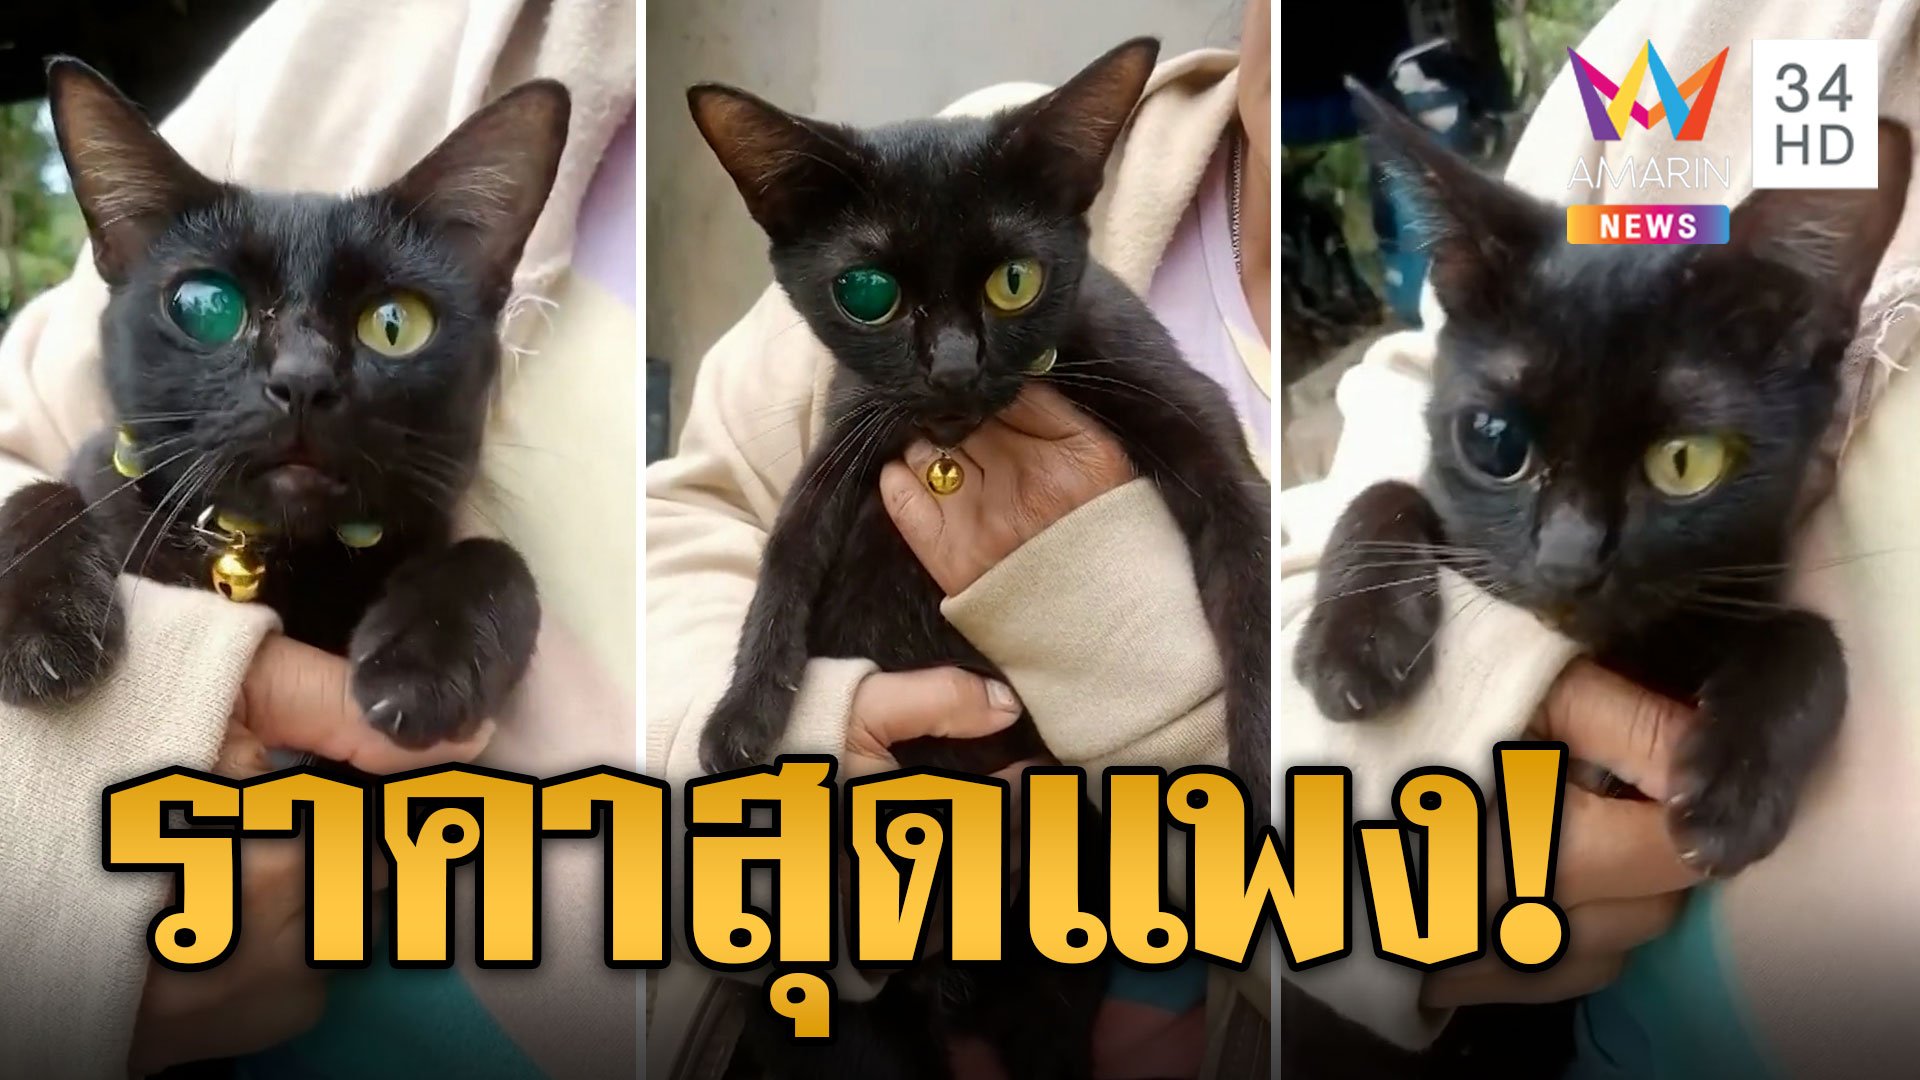 แปลกแต่จริง แมวตาเพชรมรกต ชาวเน็ตฮือฮาเผยราคาสุดแพง | ข่าวอรุณอมรินทร์ | 22 ก.ย. 66 | AMARIN TVHD34